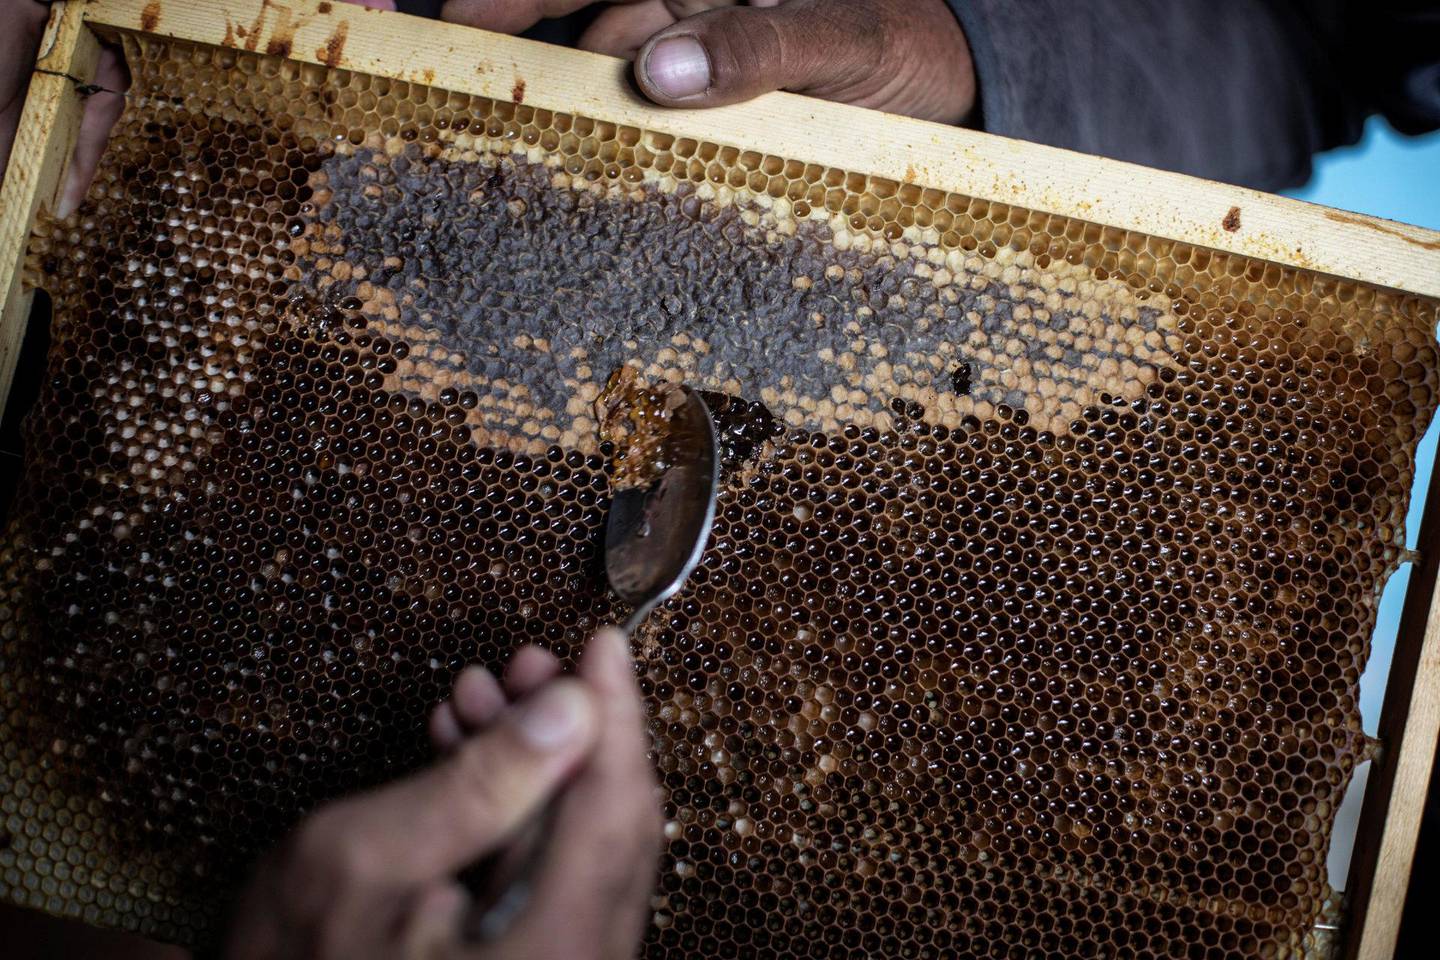 Qumry og mannen lager og selger nok honning til et godt liv.